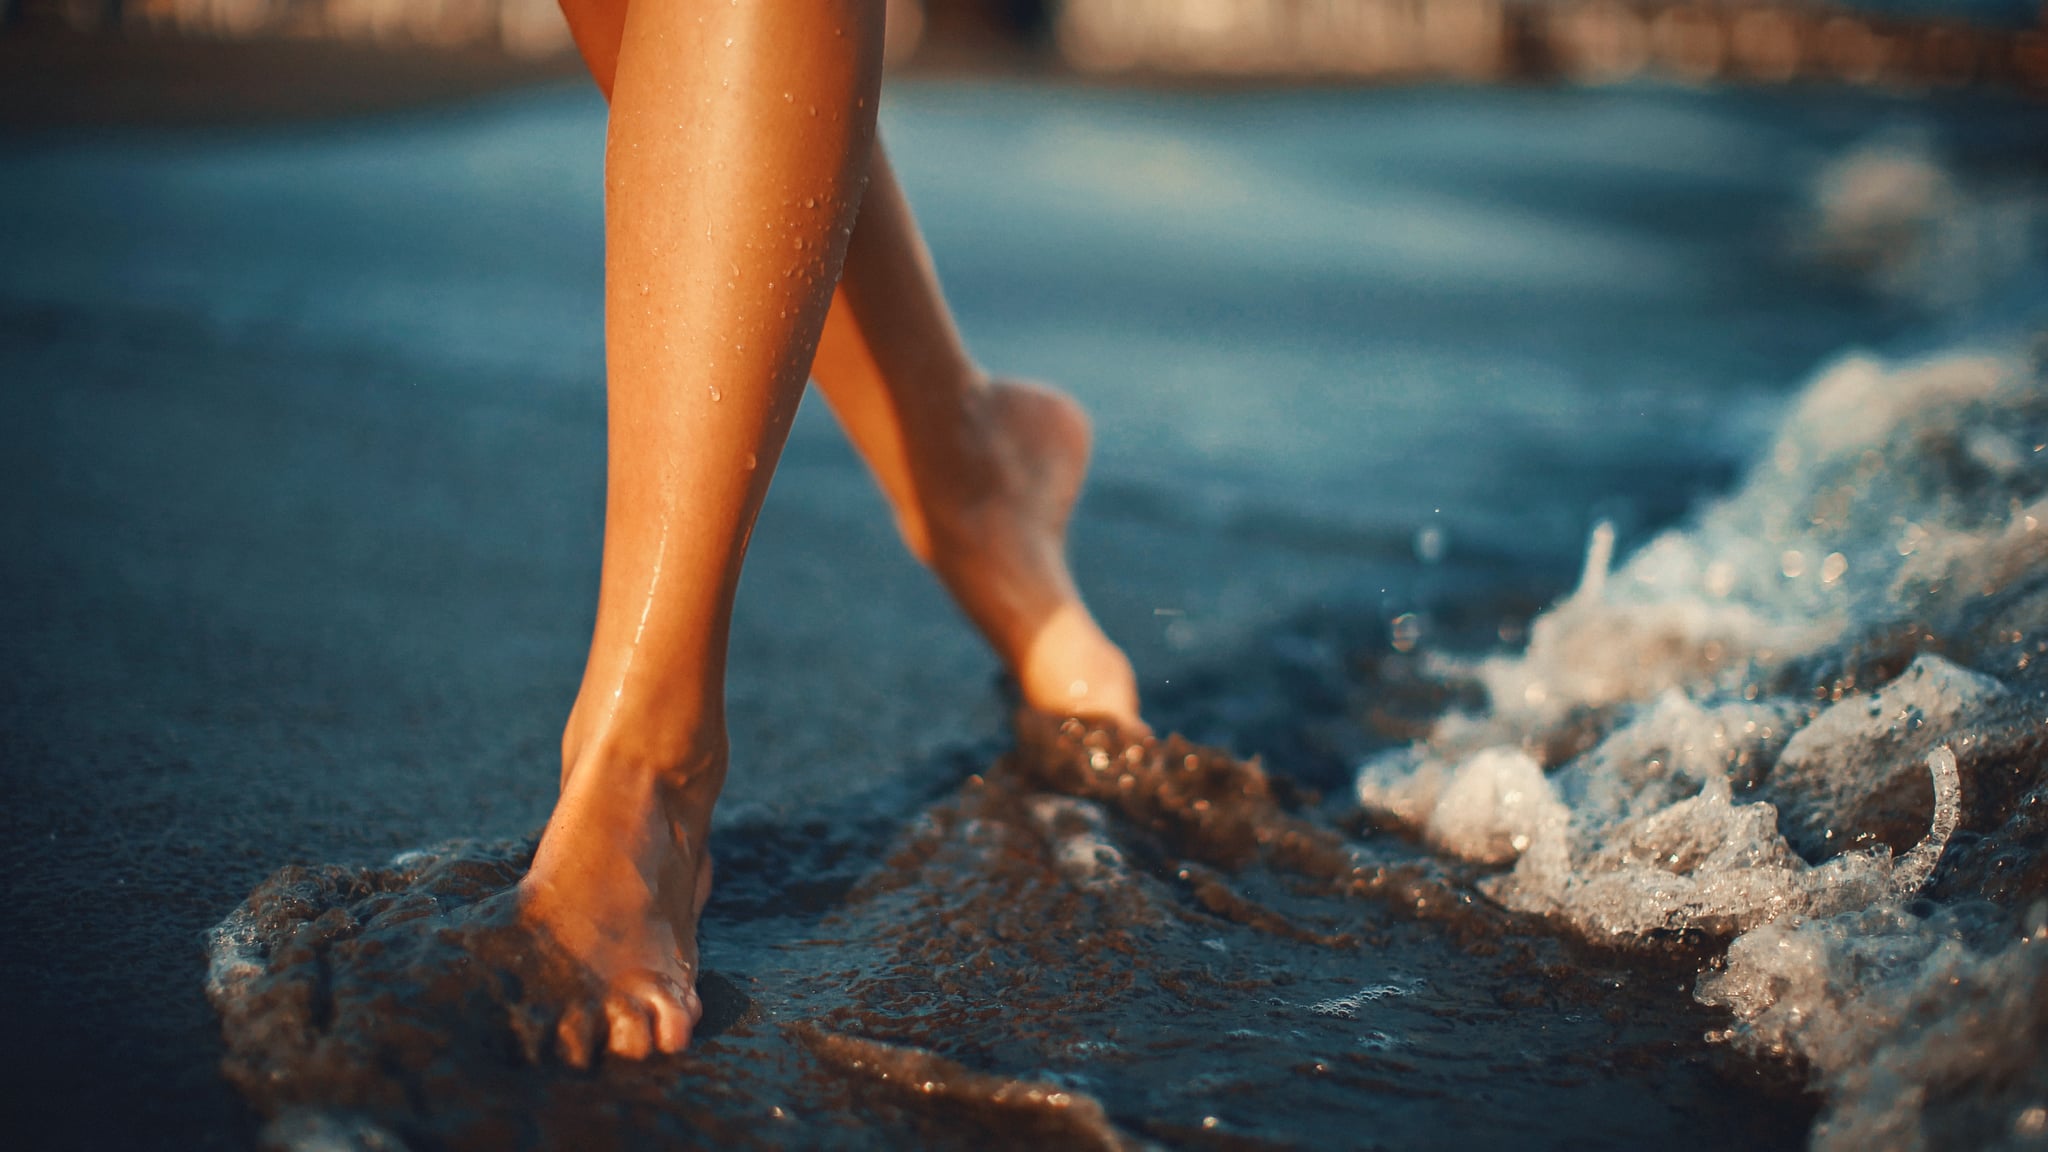 نمای نمای نزدیک زن غیرقابل شناسایی در حال قدم زدن در ساحل در حالی که آب دریا روی پاهایش پاشیده است.  در نور کم غروب آفتاب شلیک کنید.